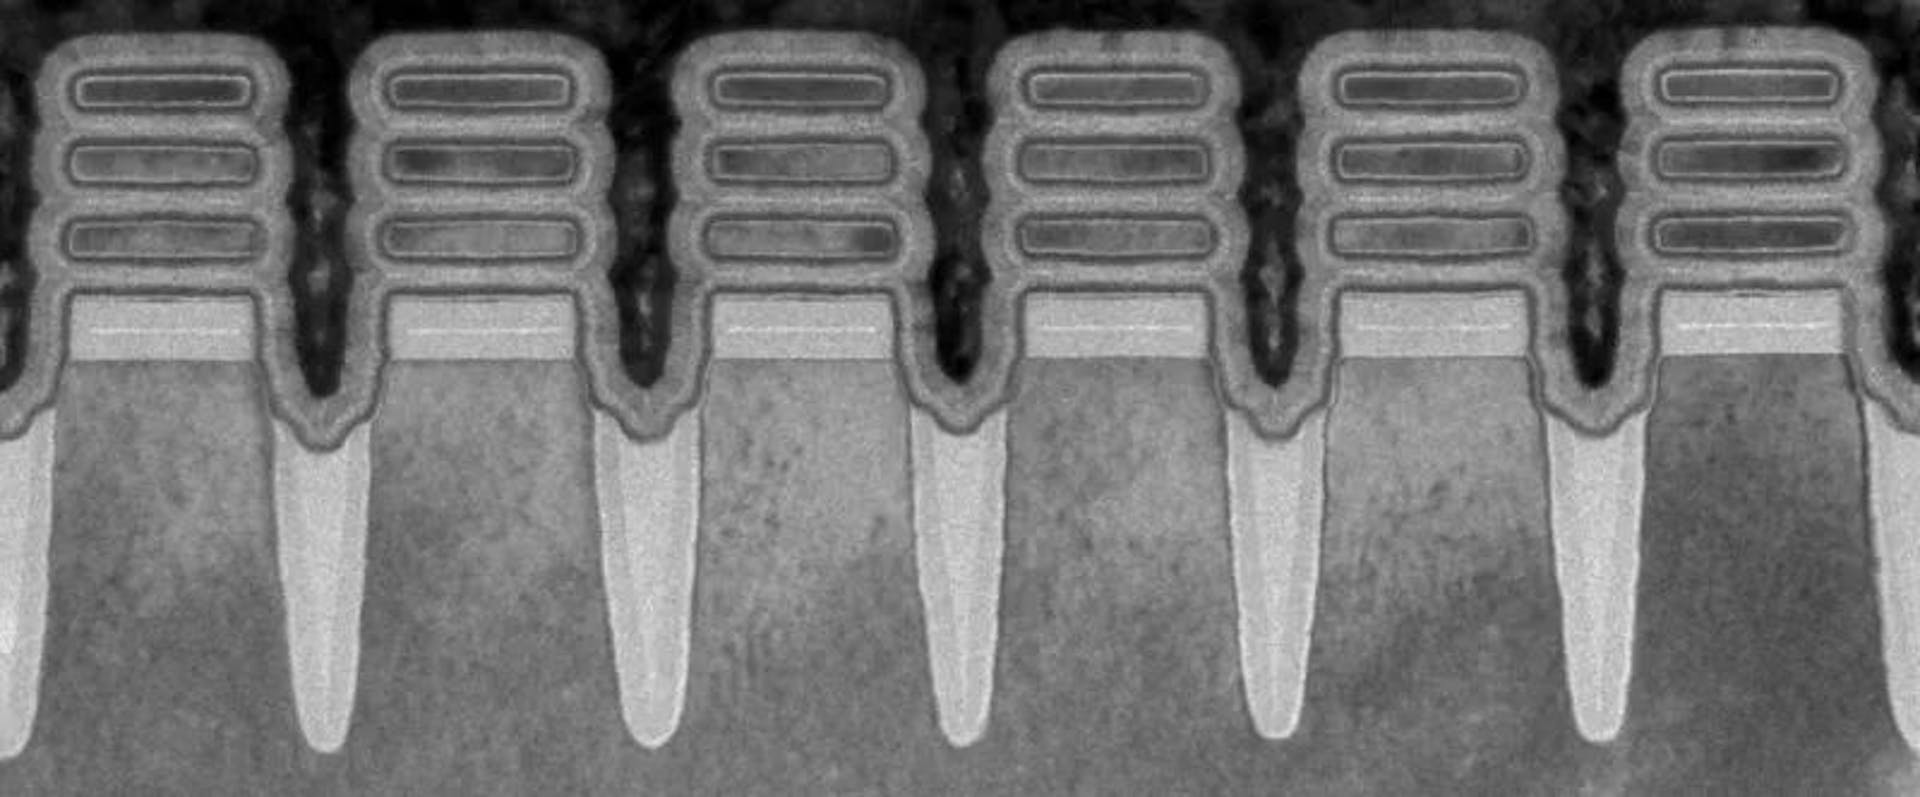 来源 - https://time.com/collection/best-inventions-2022/6228819/ibm-two-nanometer-chip/